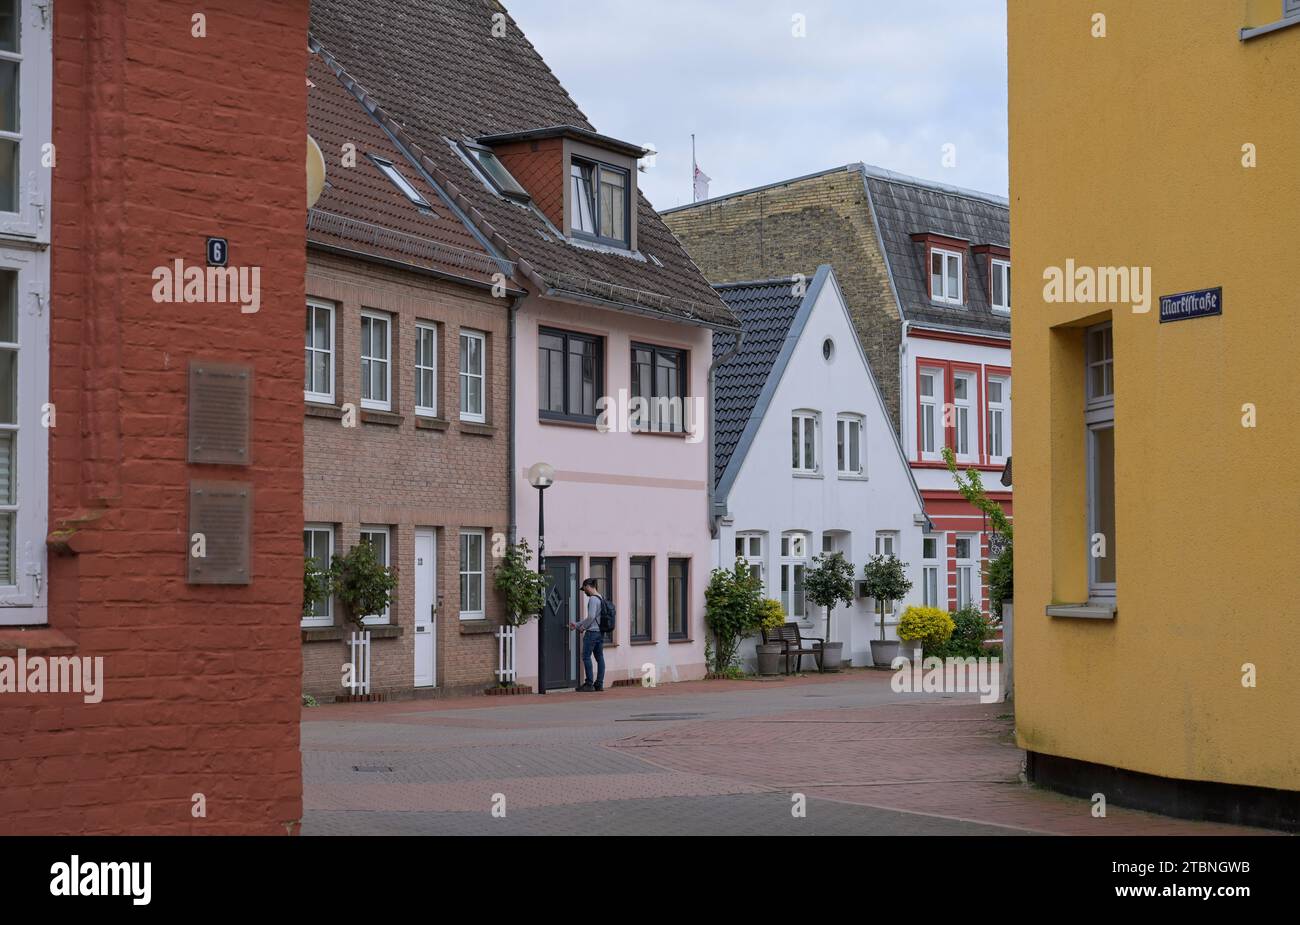 Altbauten, Marktstraße, Altstadt, Schleswig, Schleswig-Holstein, Deutschland Stock Photo